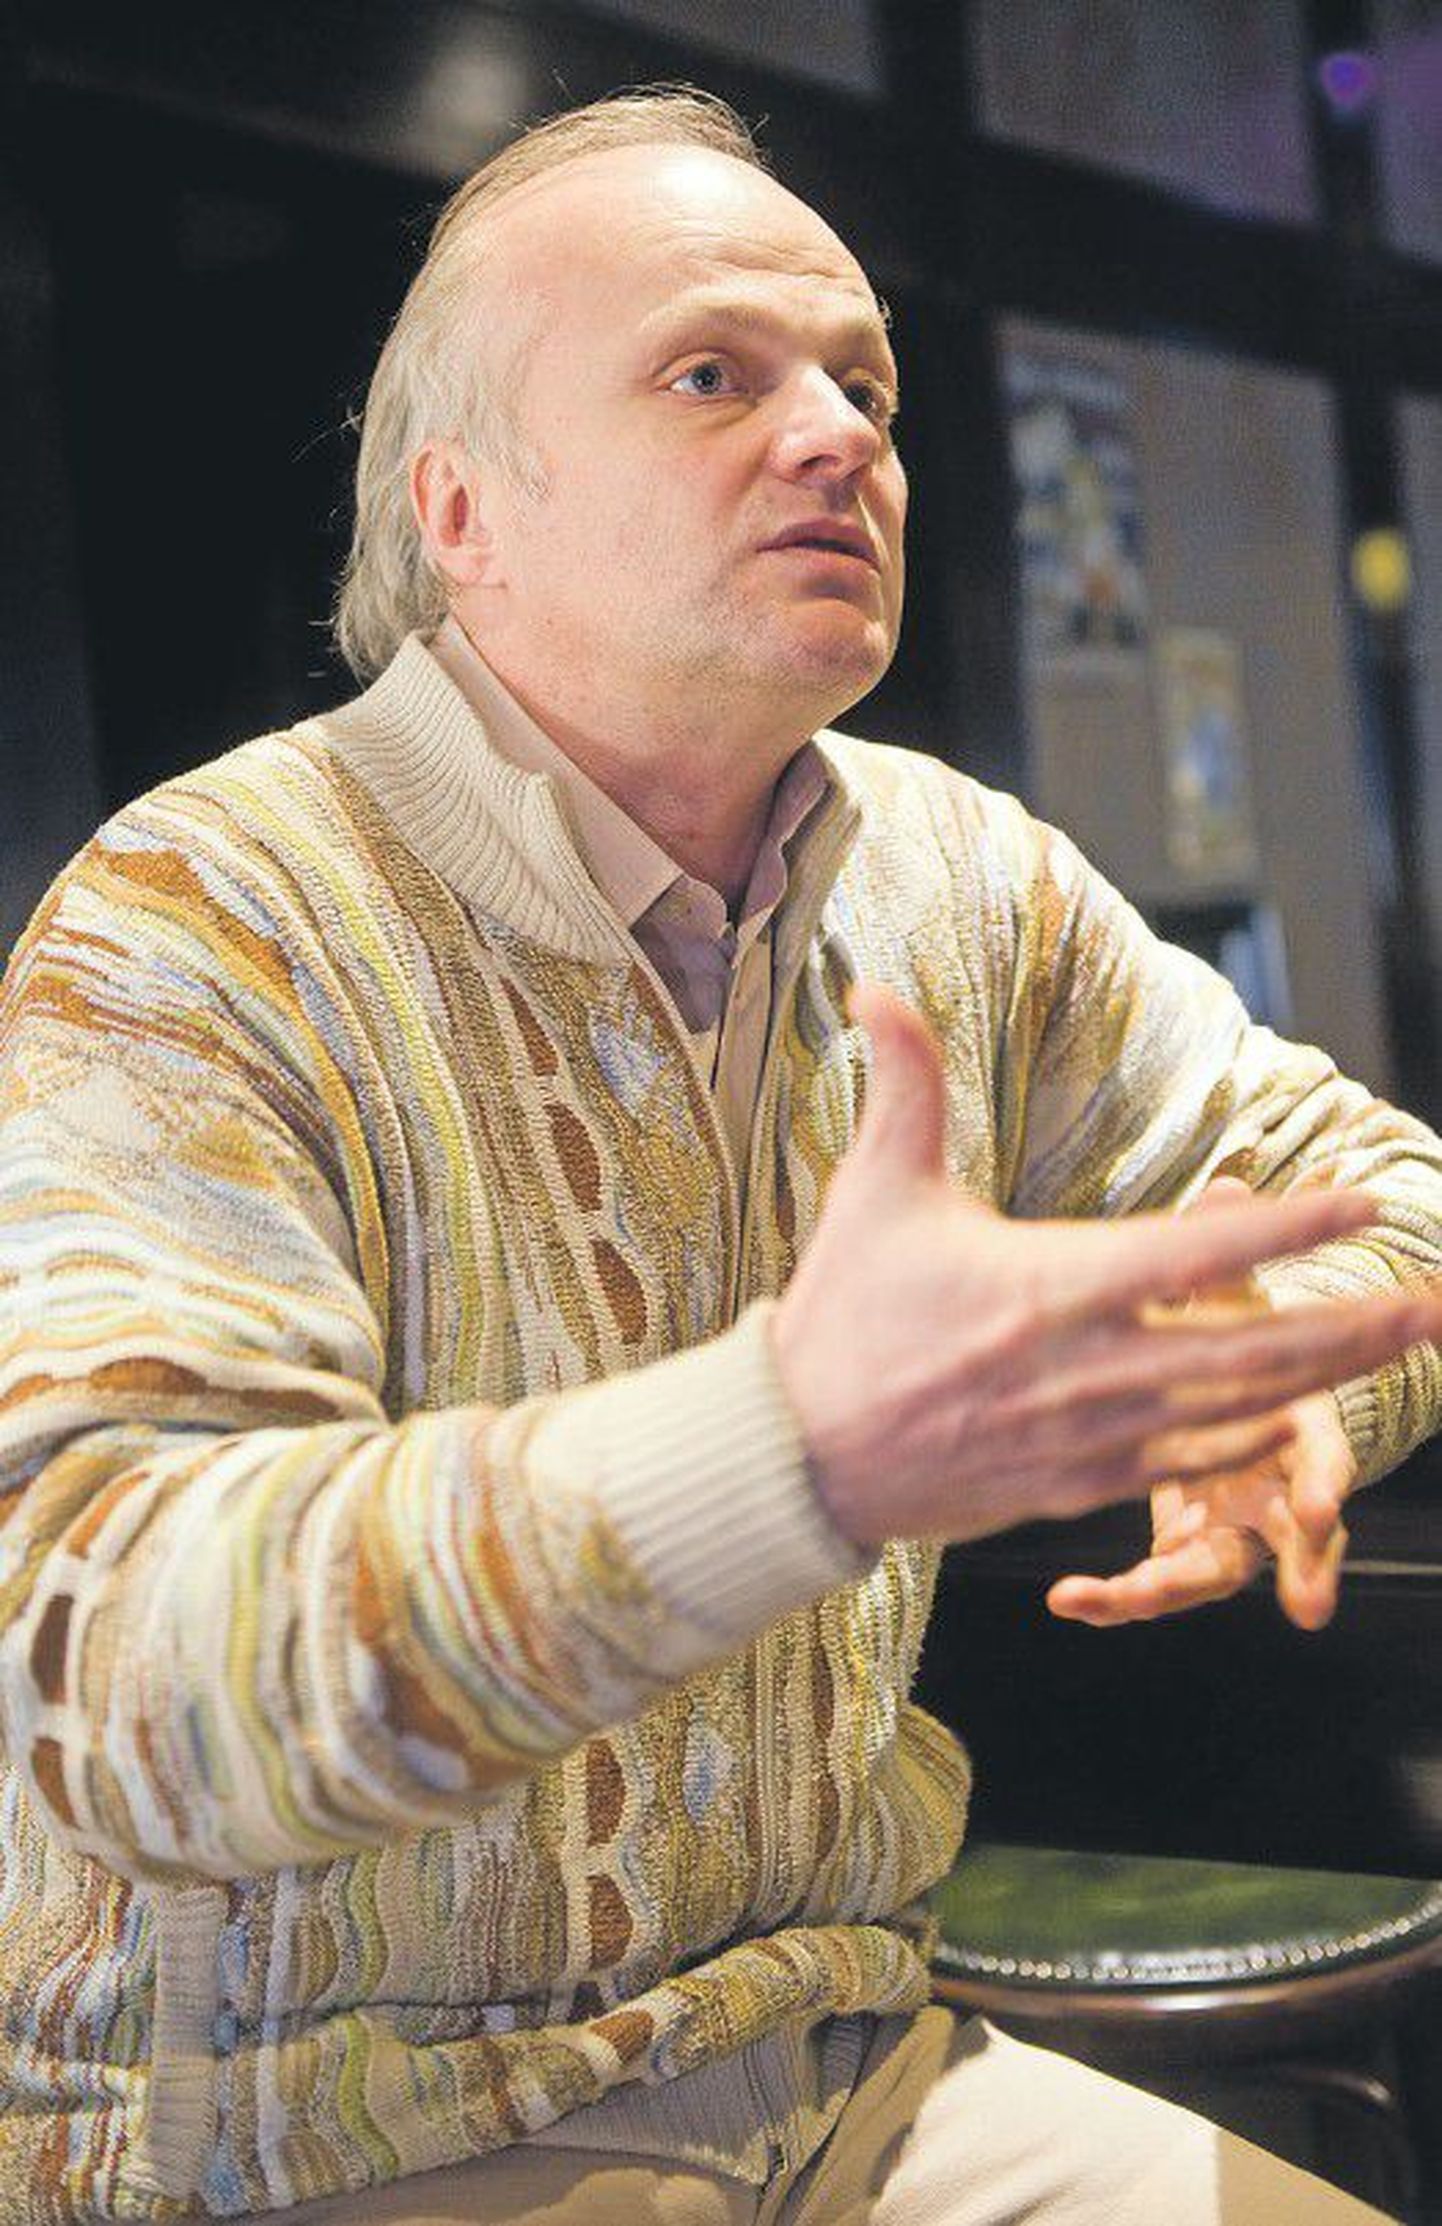 Сергей Барковский — режиссер и актер с философским дипломом.